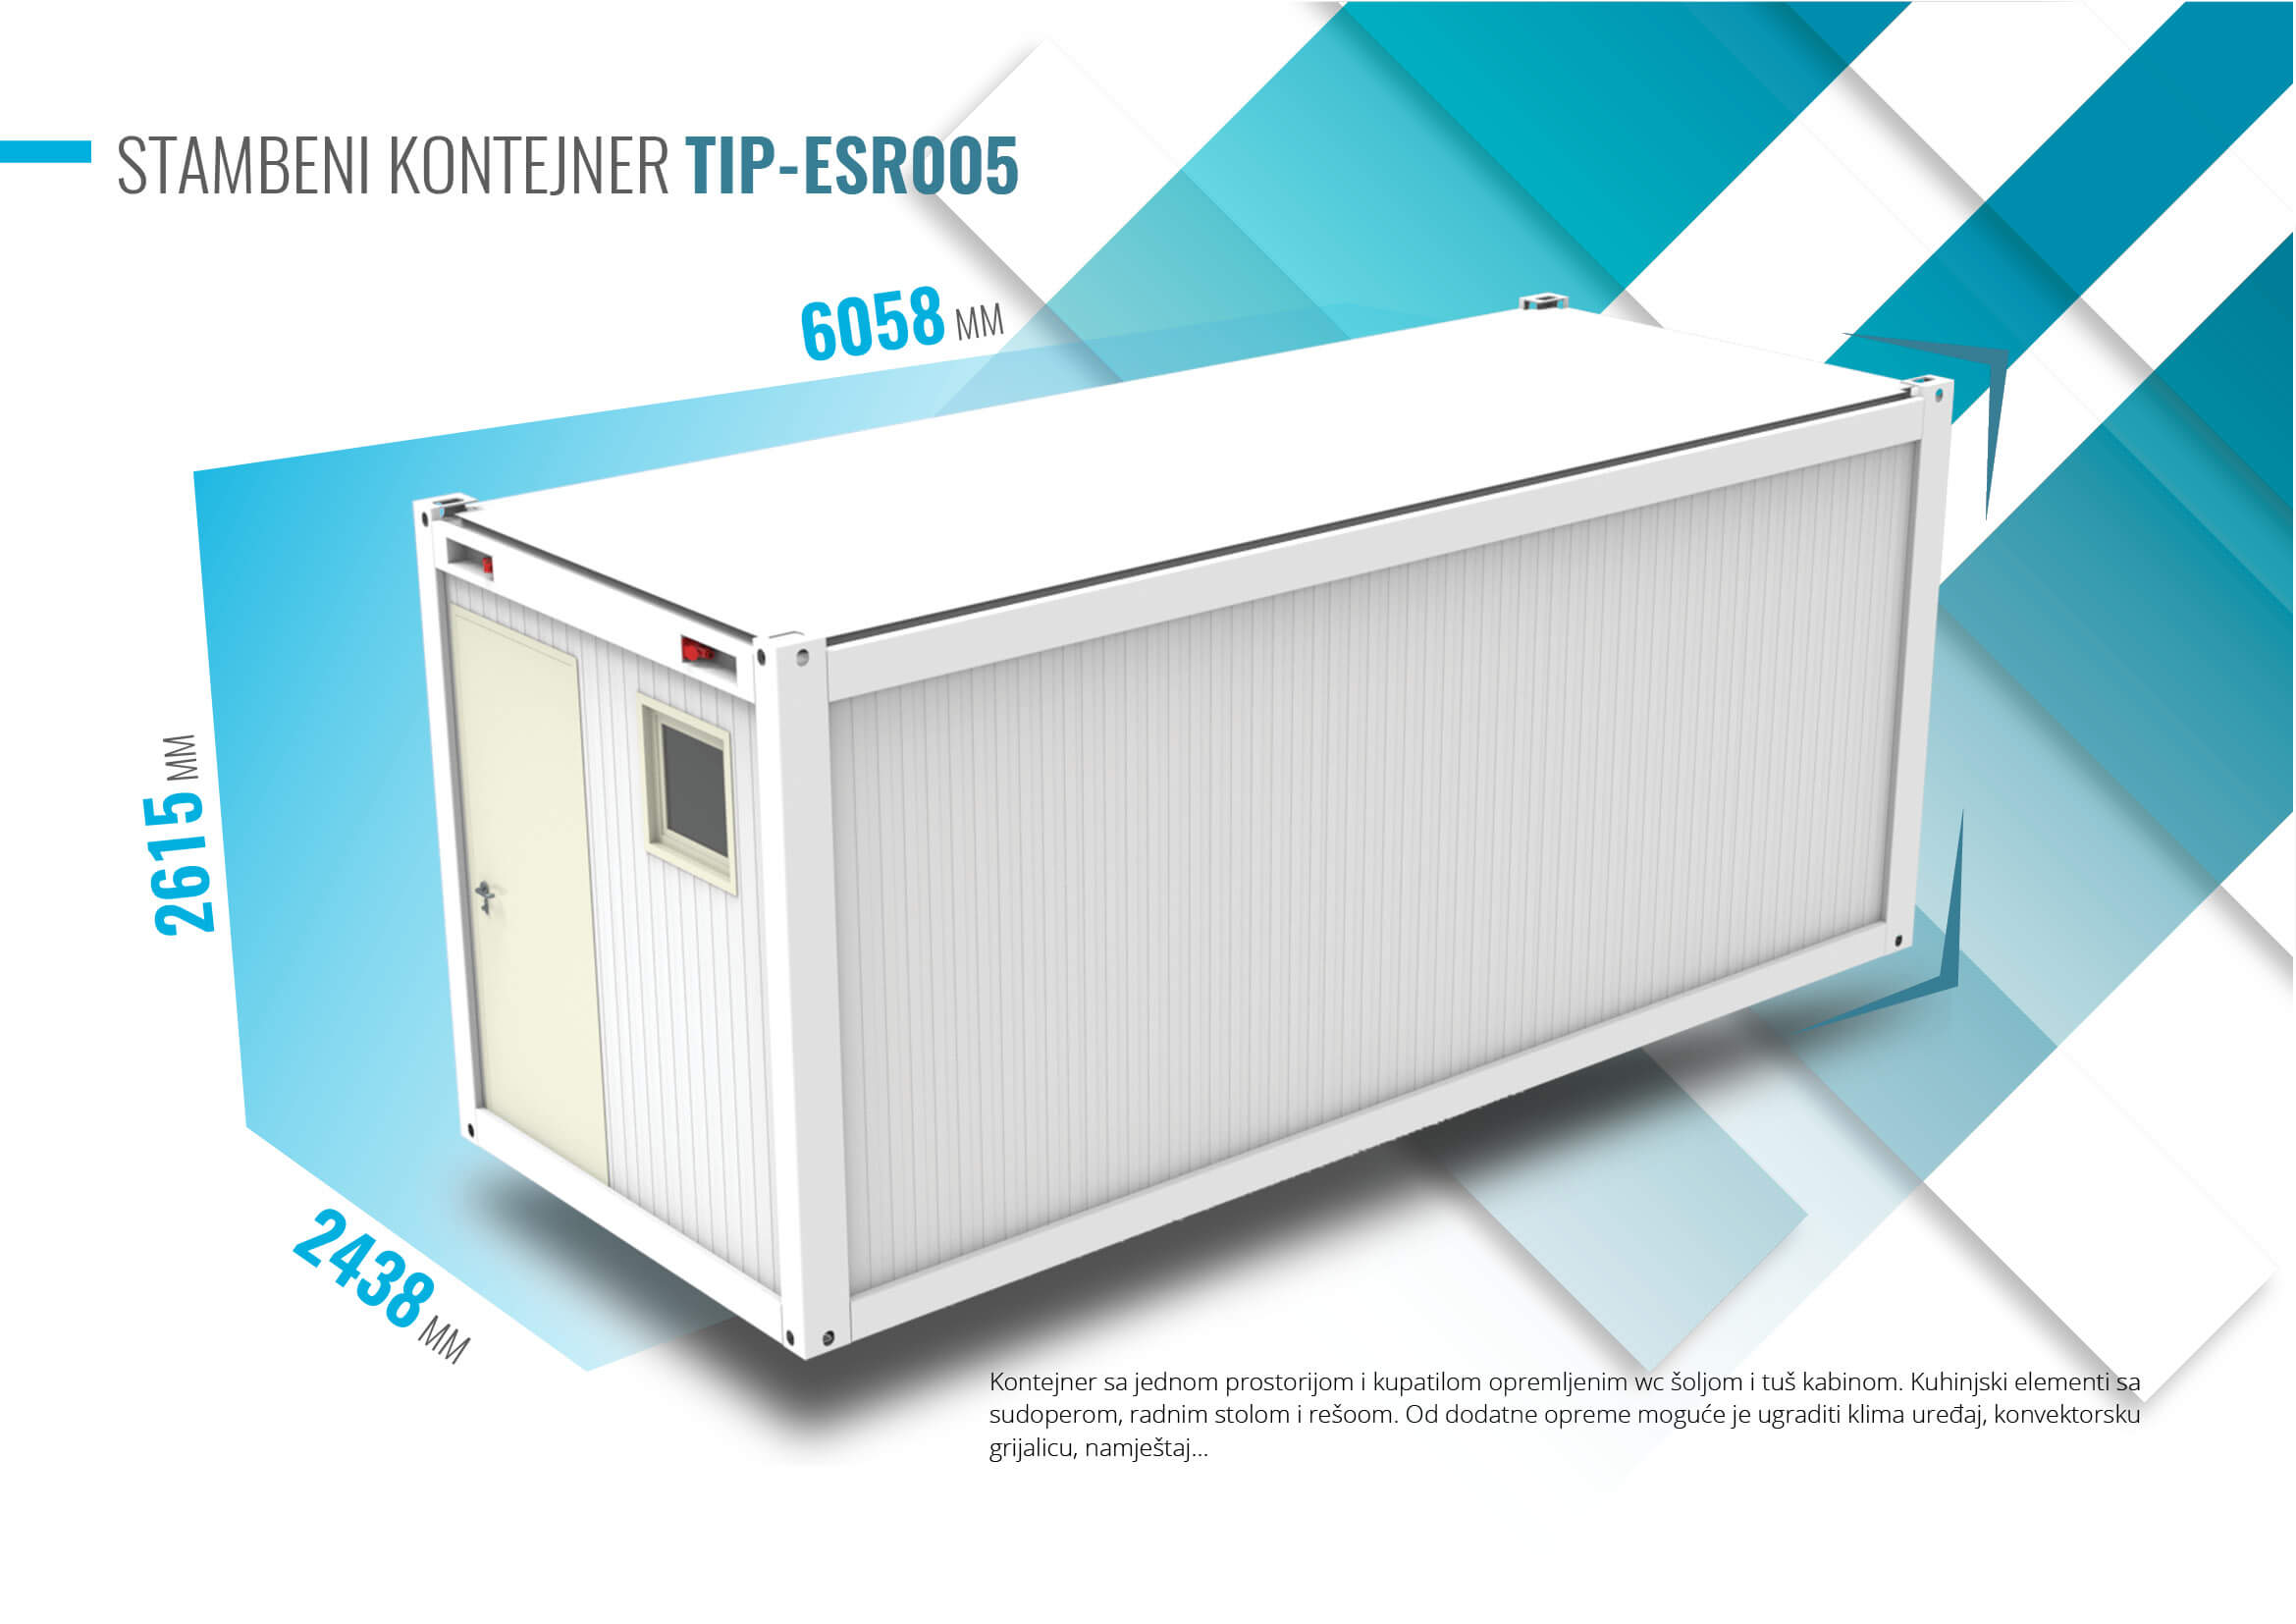 Elvaco MetPro kontejneri - Modularni sistemi